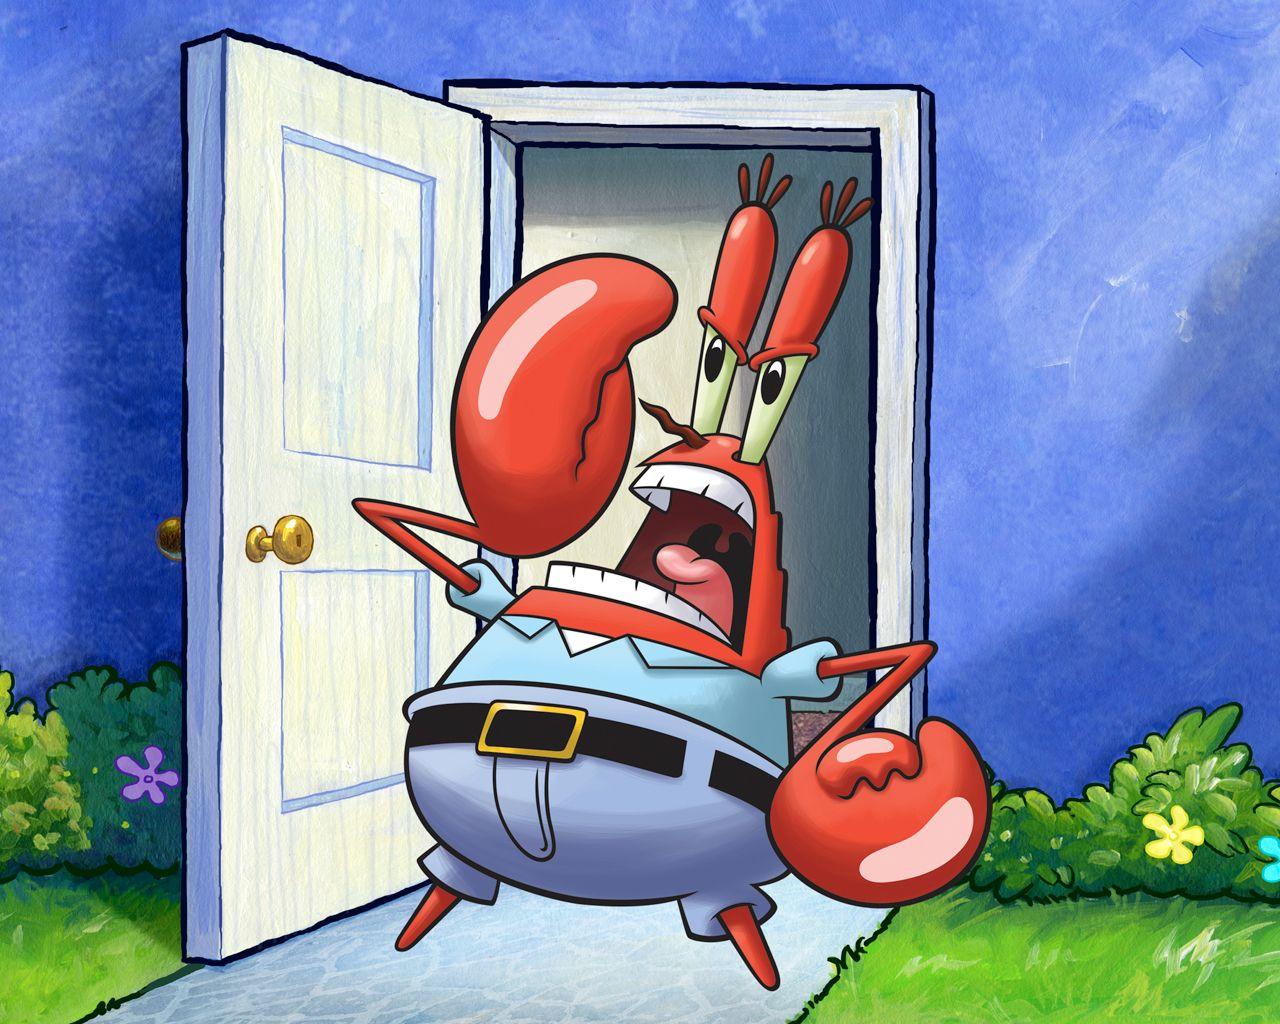 Mr Krabs in Spongebob Image